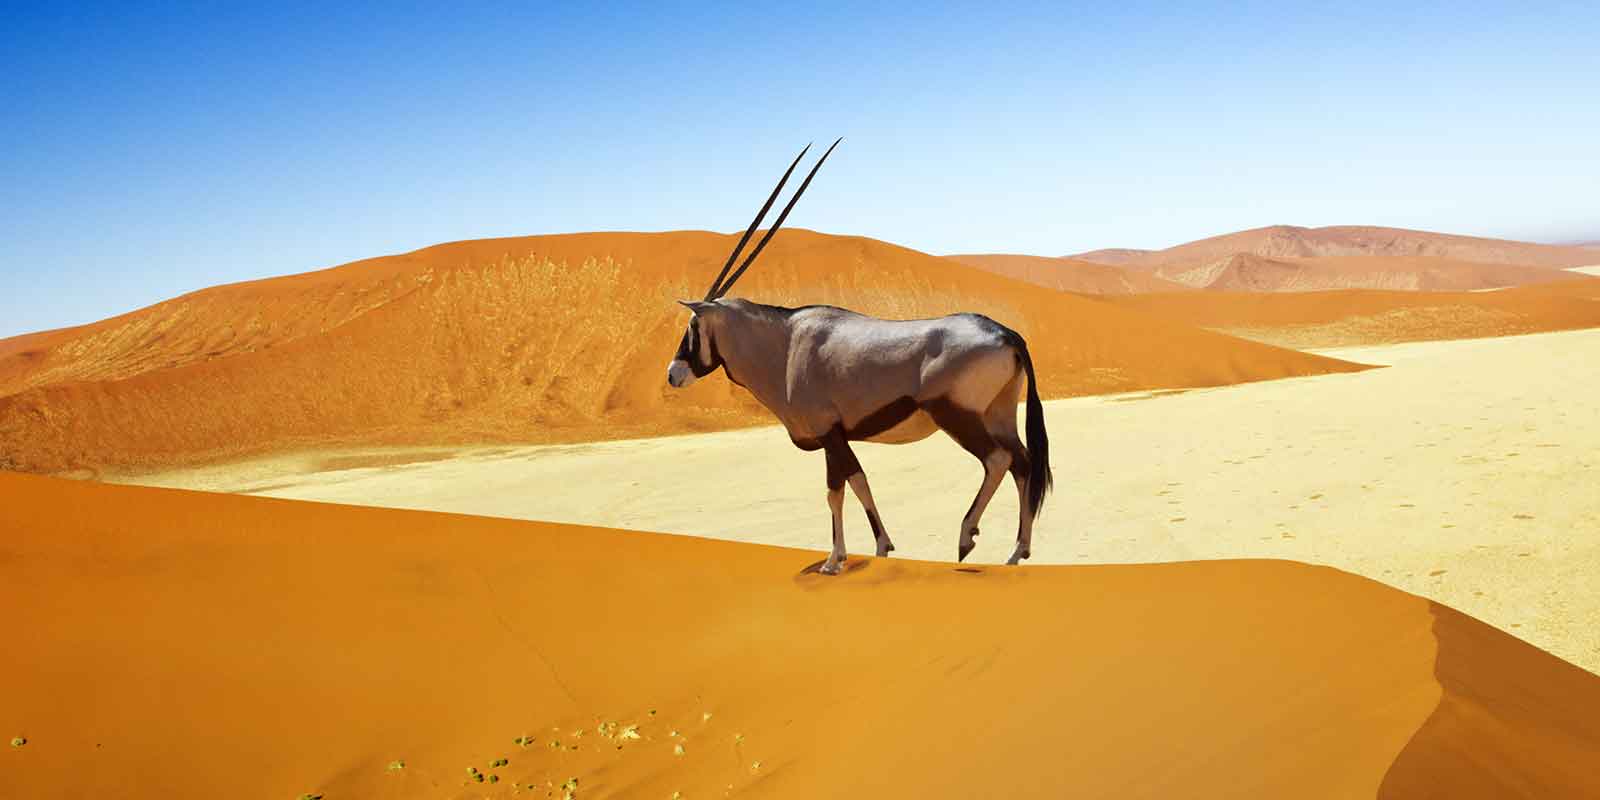 Oryx on sand dune in Namib Naukluft Park, Namibia